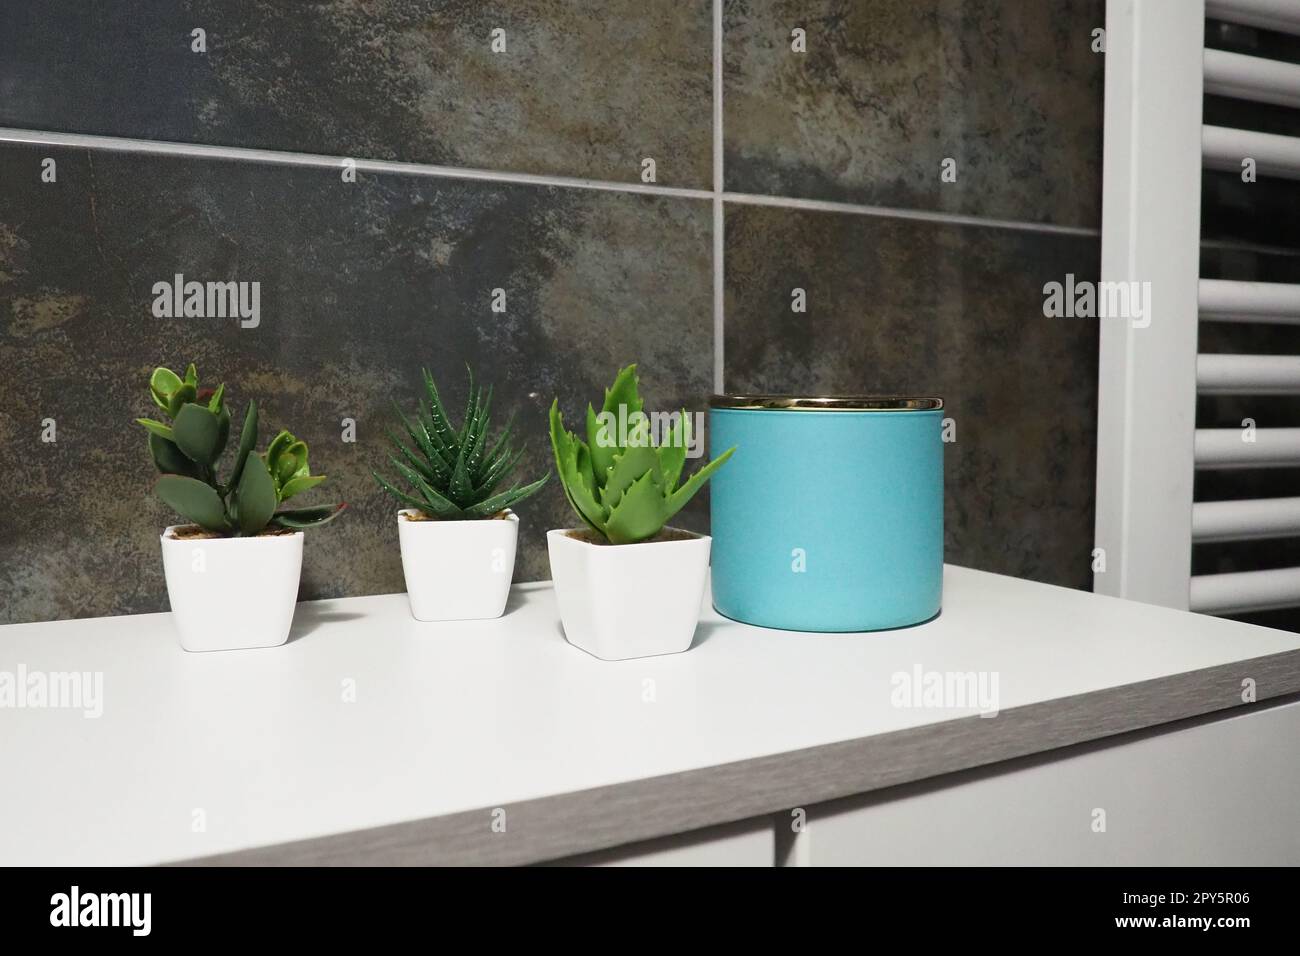 Elementi decorativi del bagno. Un barattolo blu di crema e piante verdi in piccoli vasi bianchi si trova su un ripiano dell'armadietto. Piastrelle nere. Bagno e WC interno. Radiatore sulla parete. Foto Stock